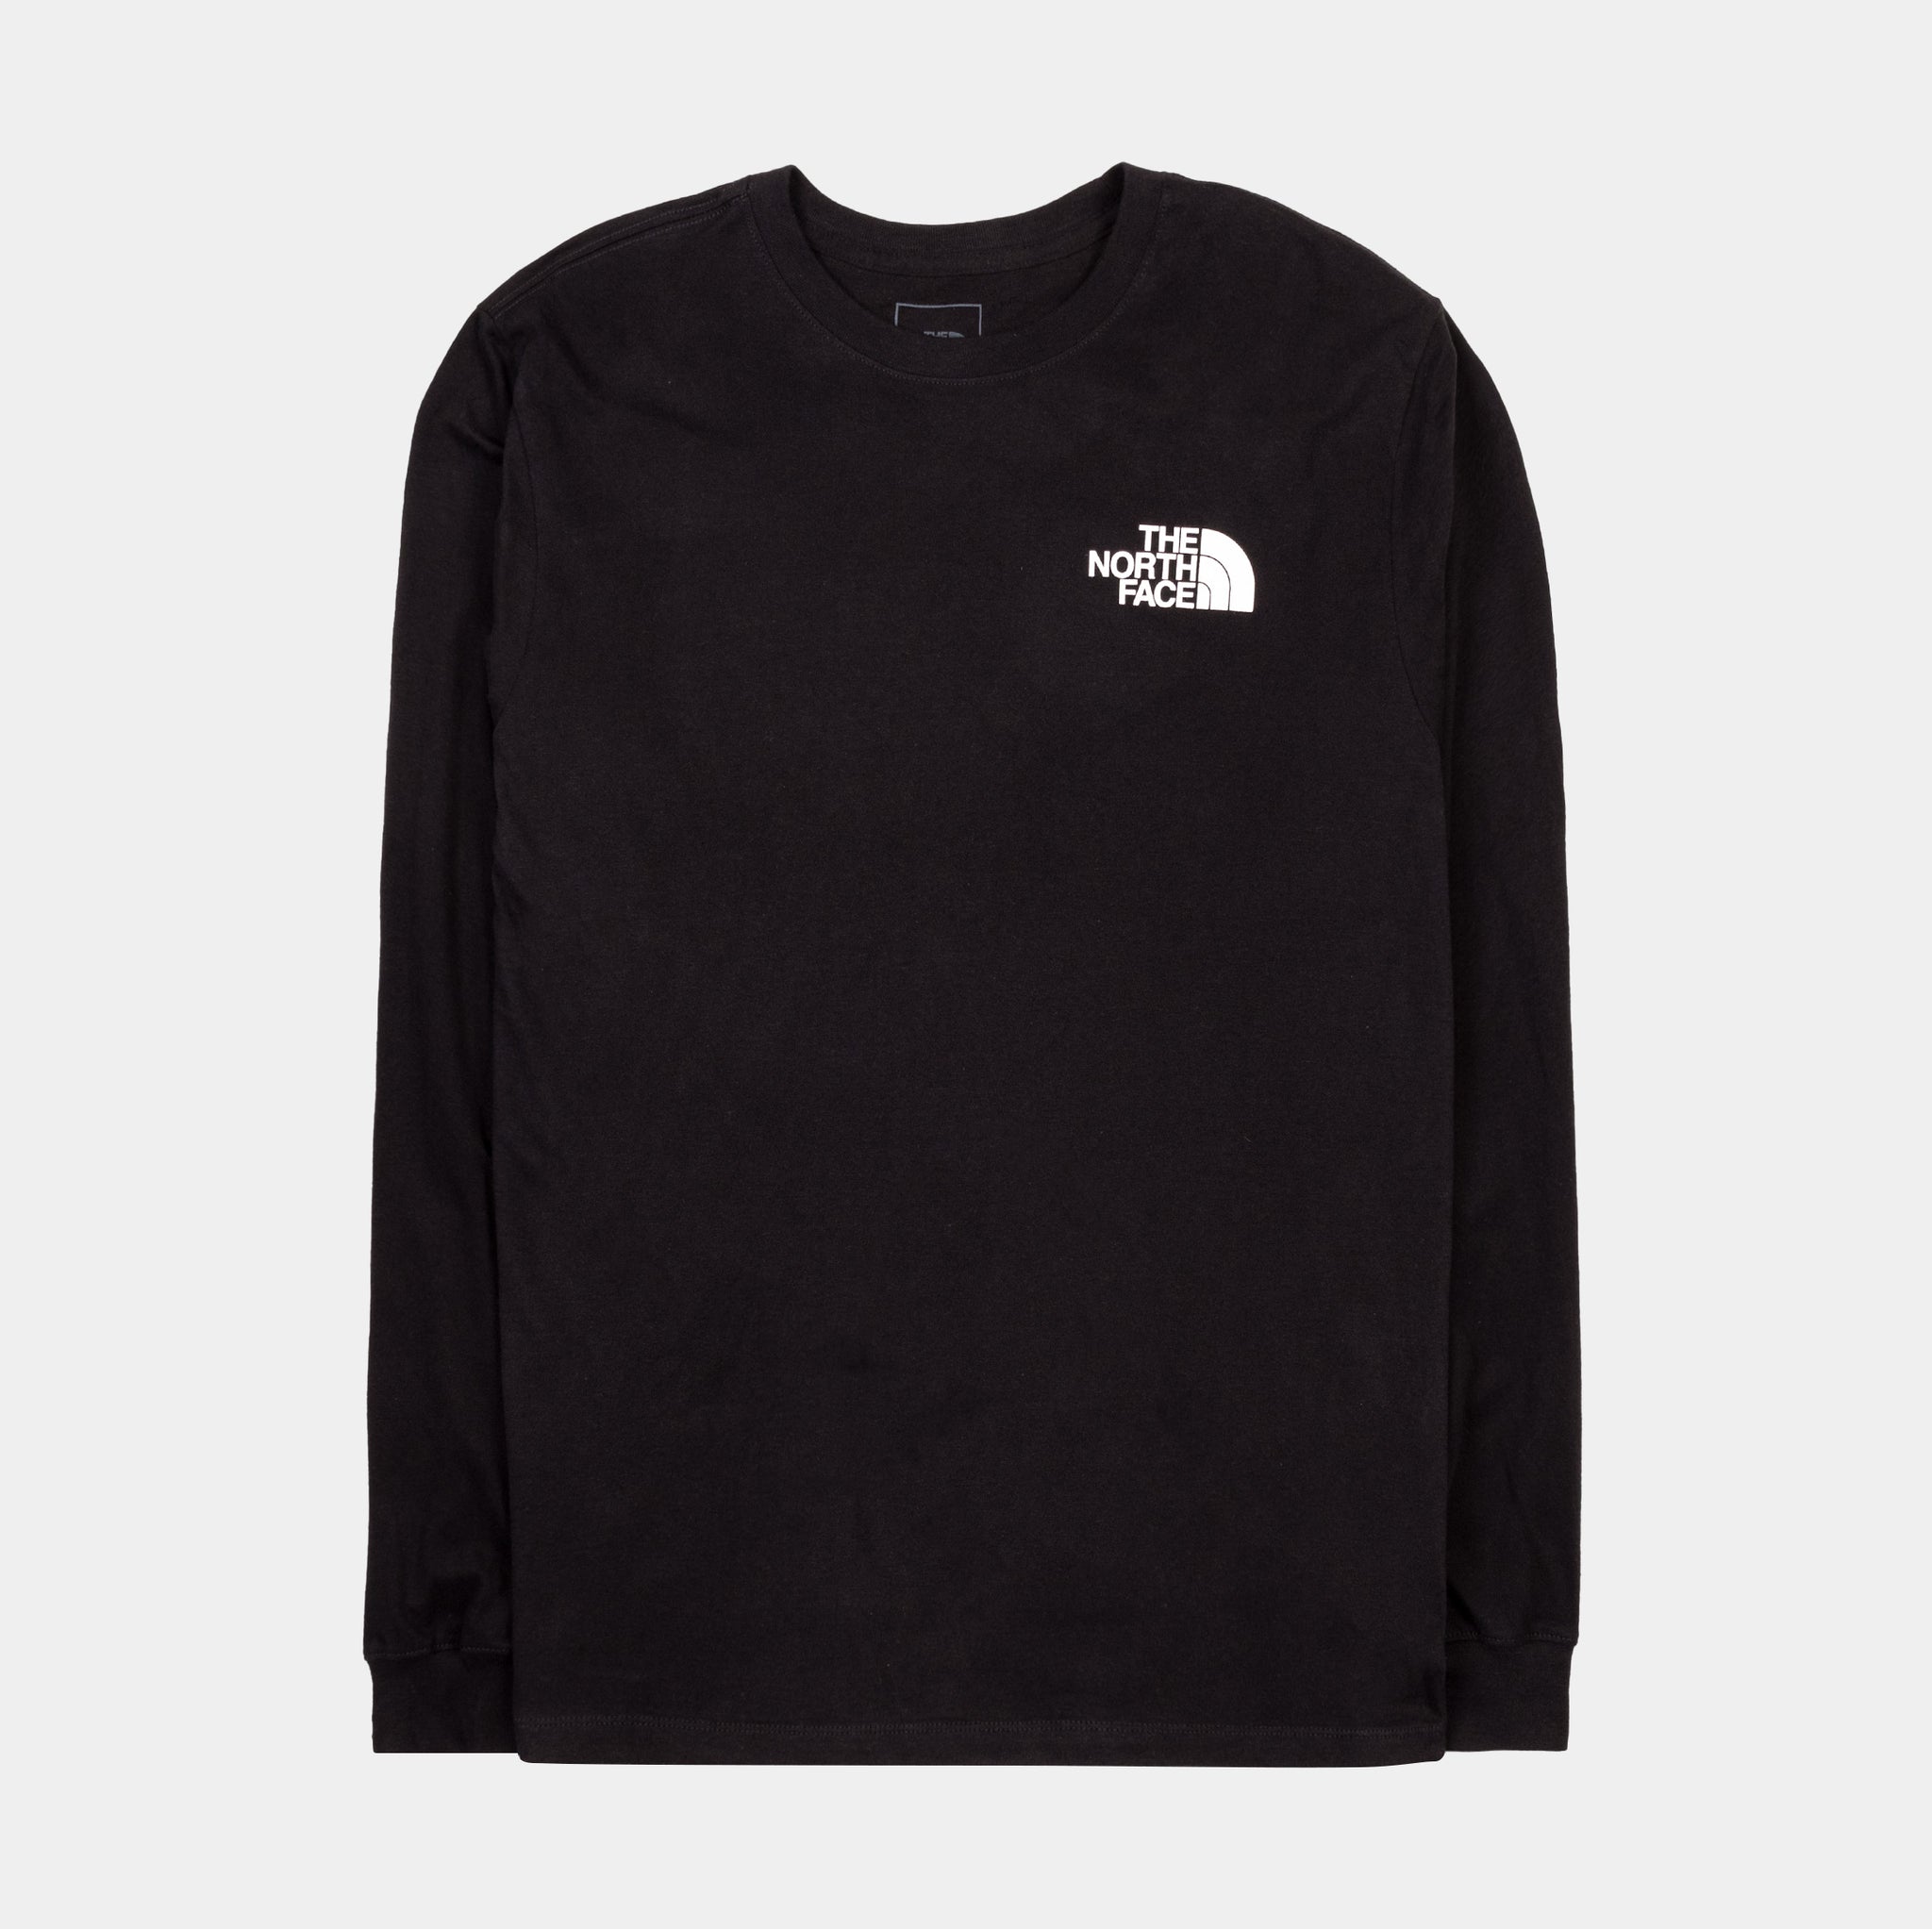 Box NSE Tee Mens Long Sleeve Shirt (Black) Free Shipping